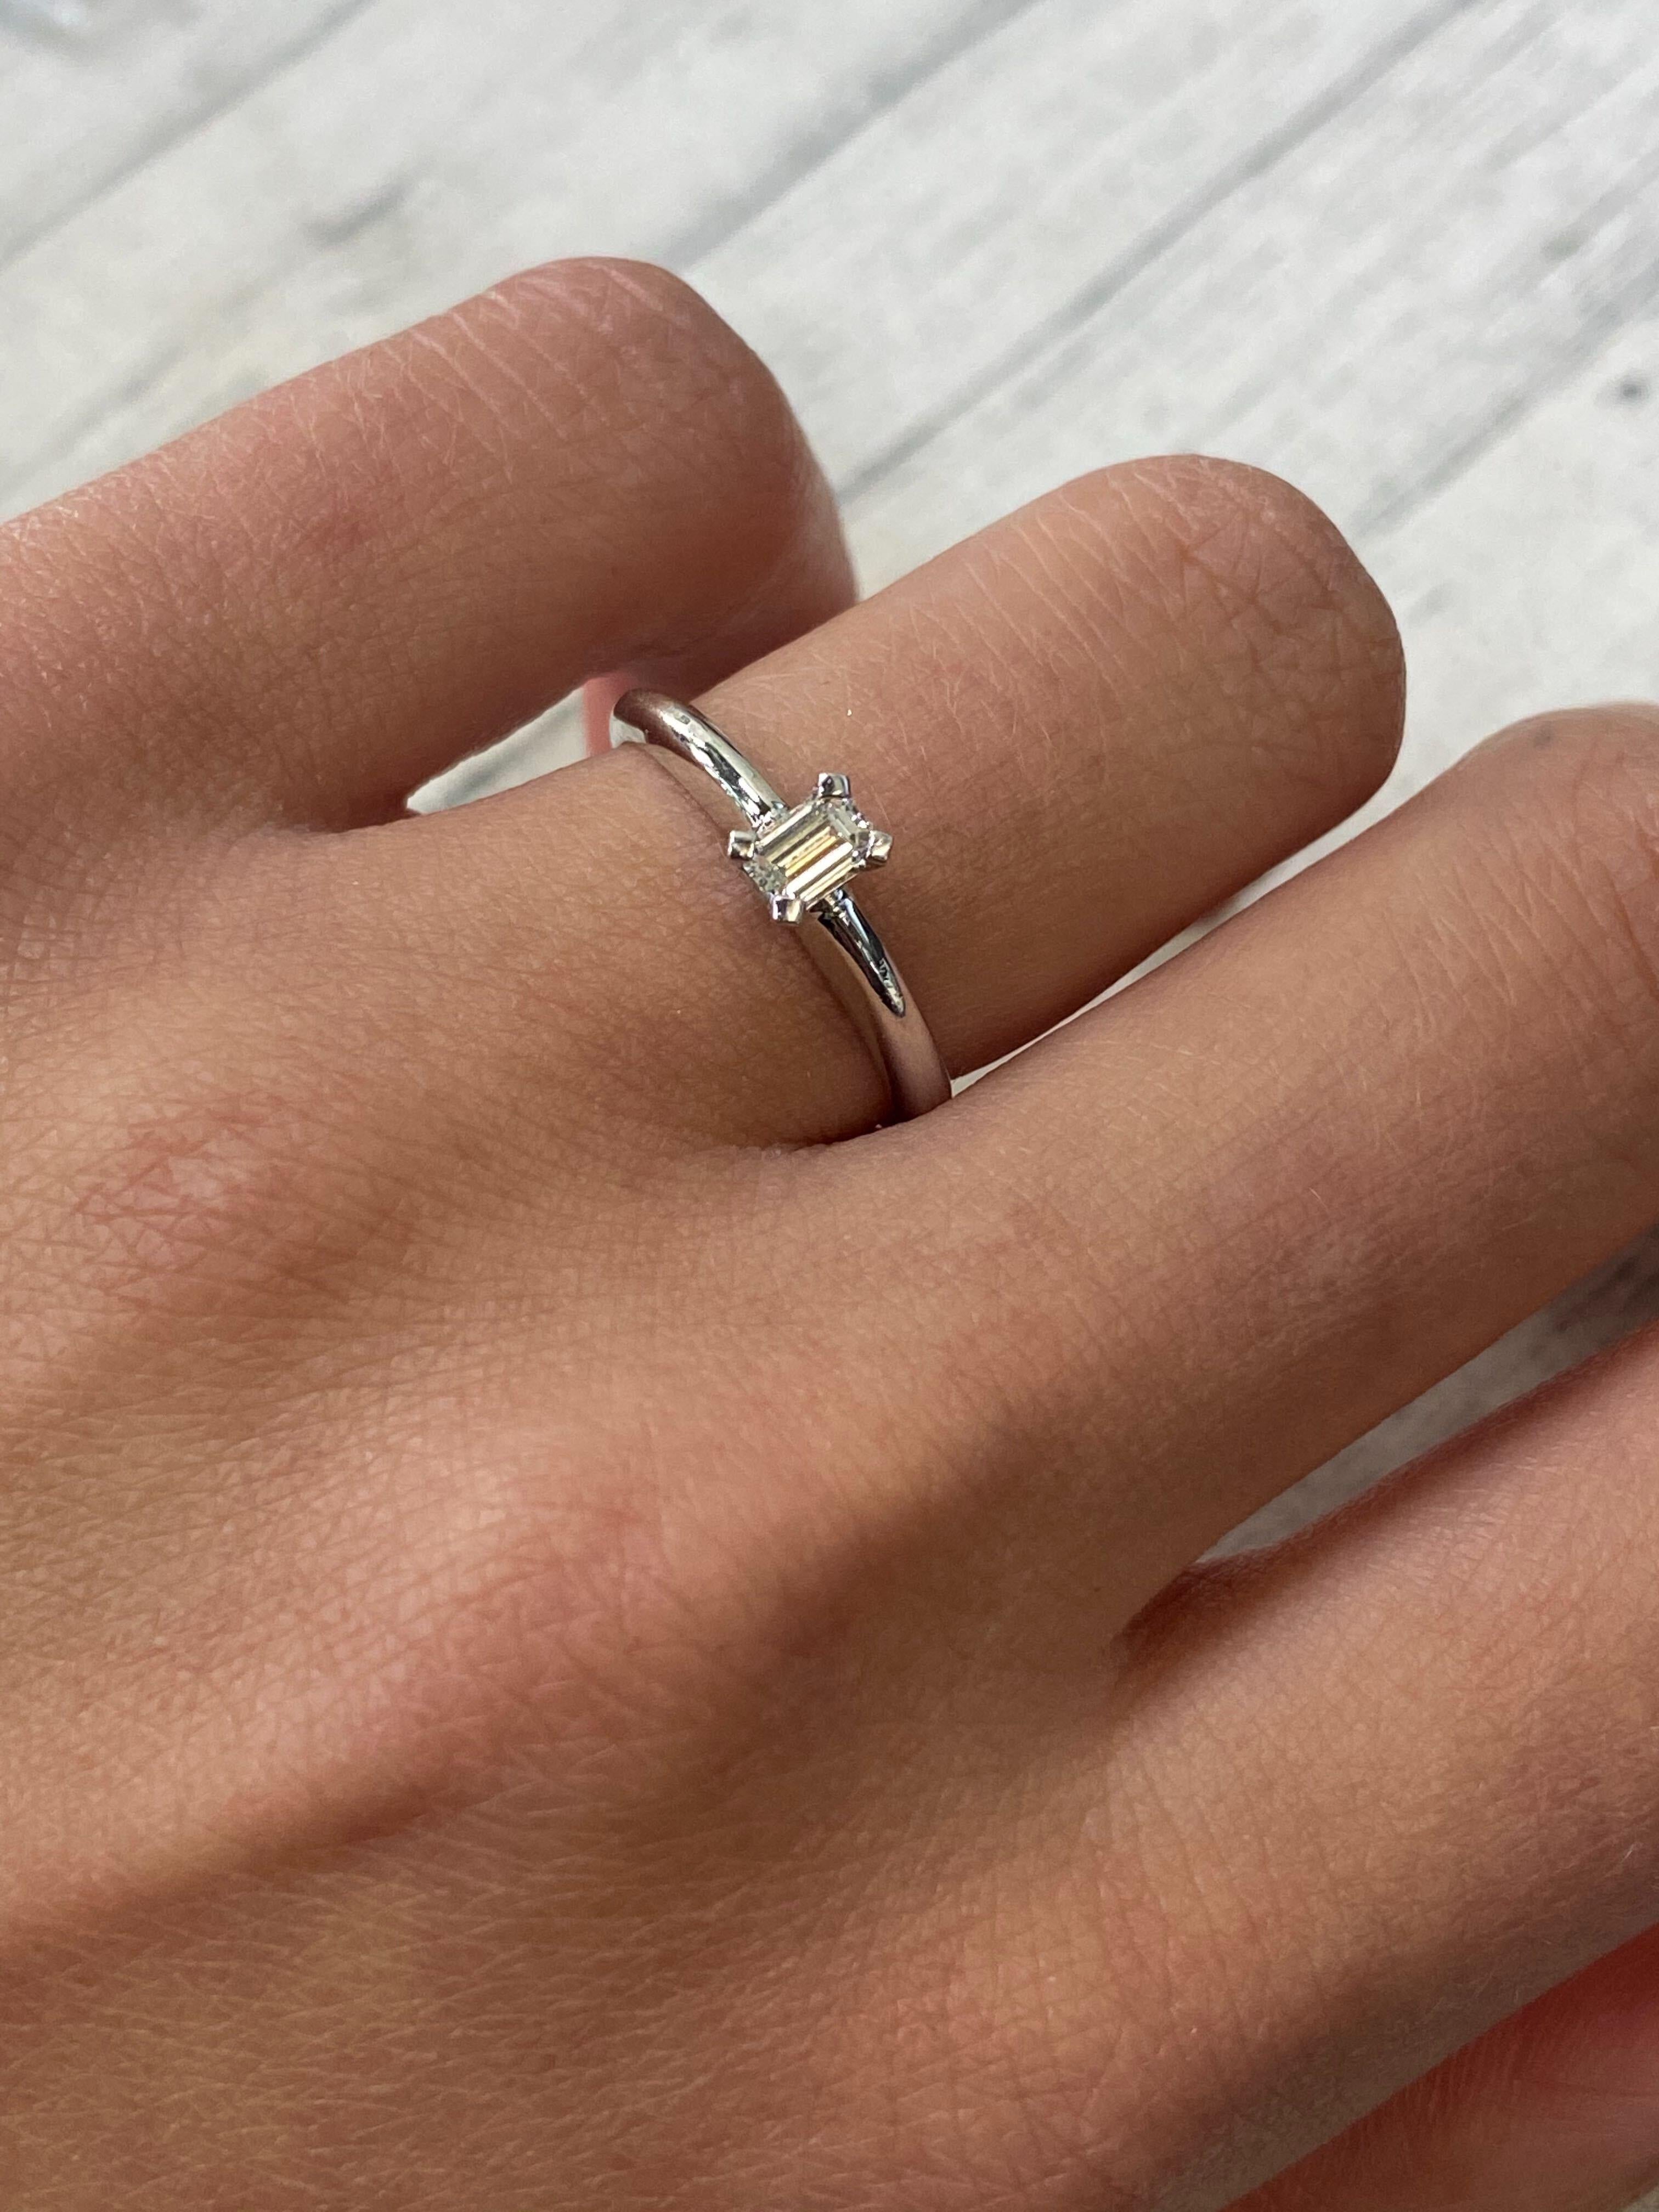 Rachel Koen Diamond Ladies Engagement Ring 14K White Gold 0.20cttw For Sale 2